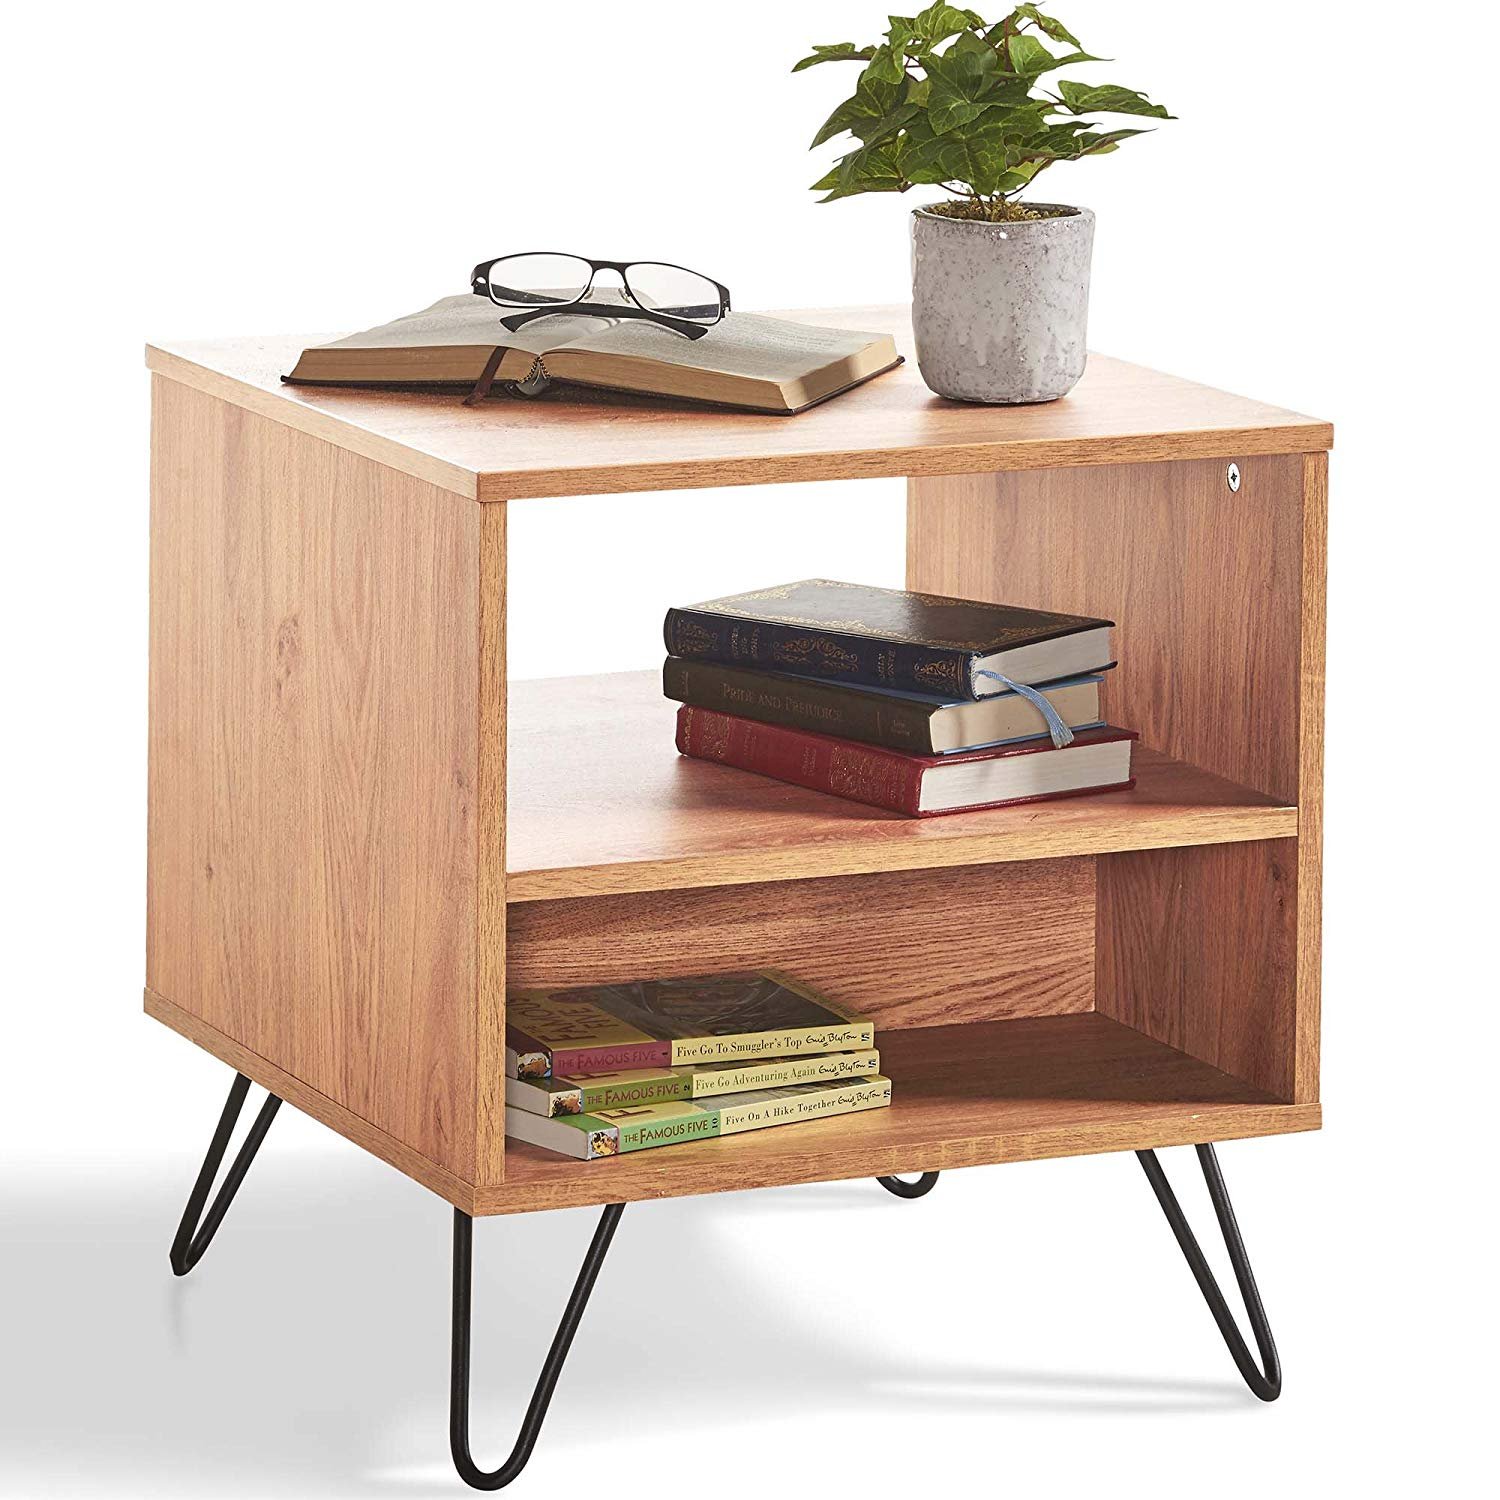 Rhegion 2 Shelf Storage End Table – Brown